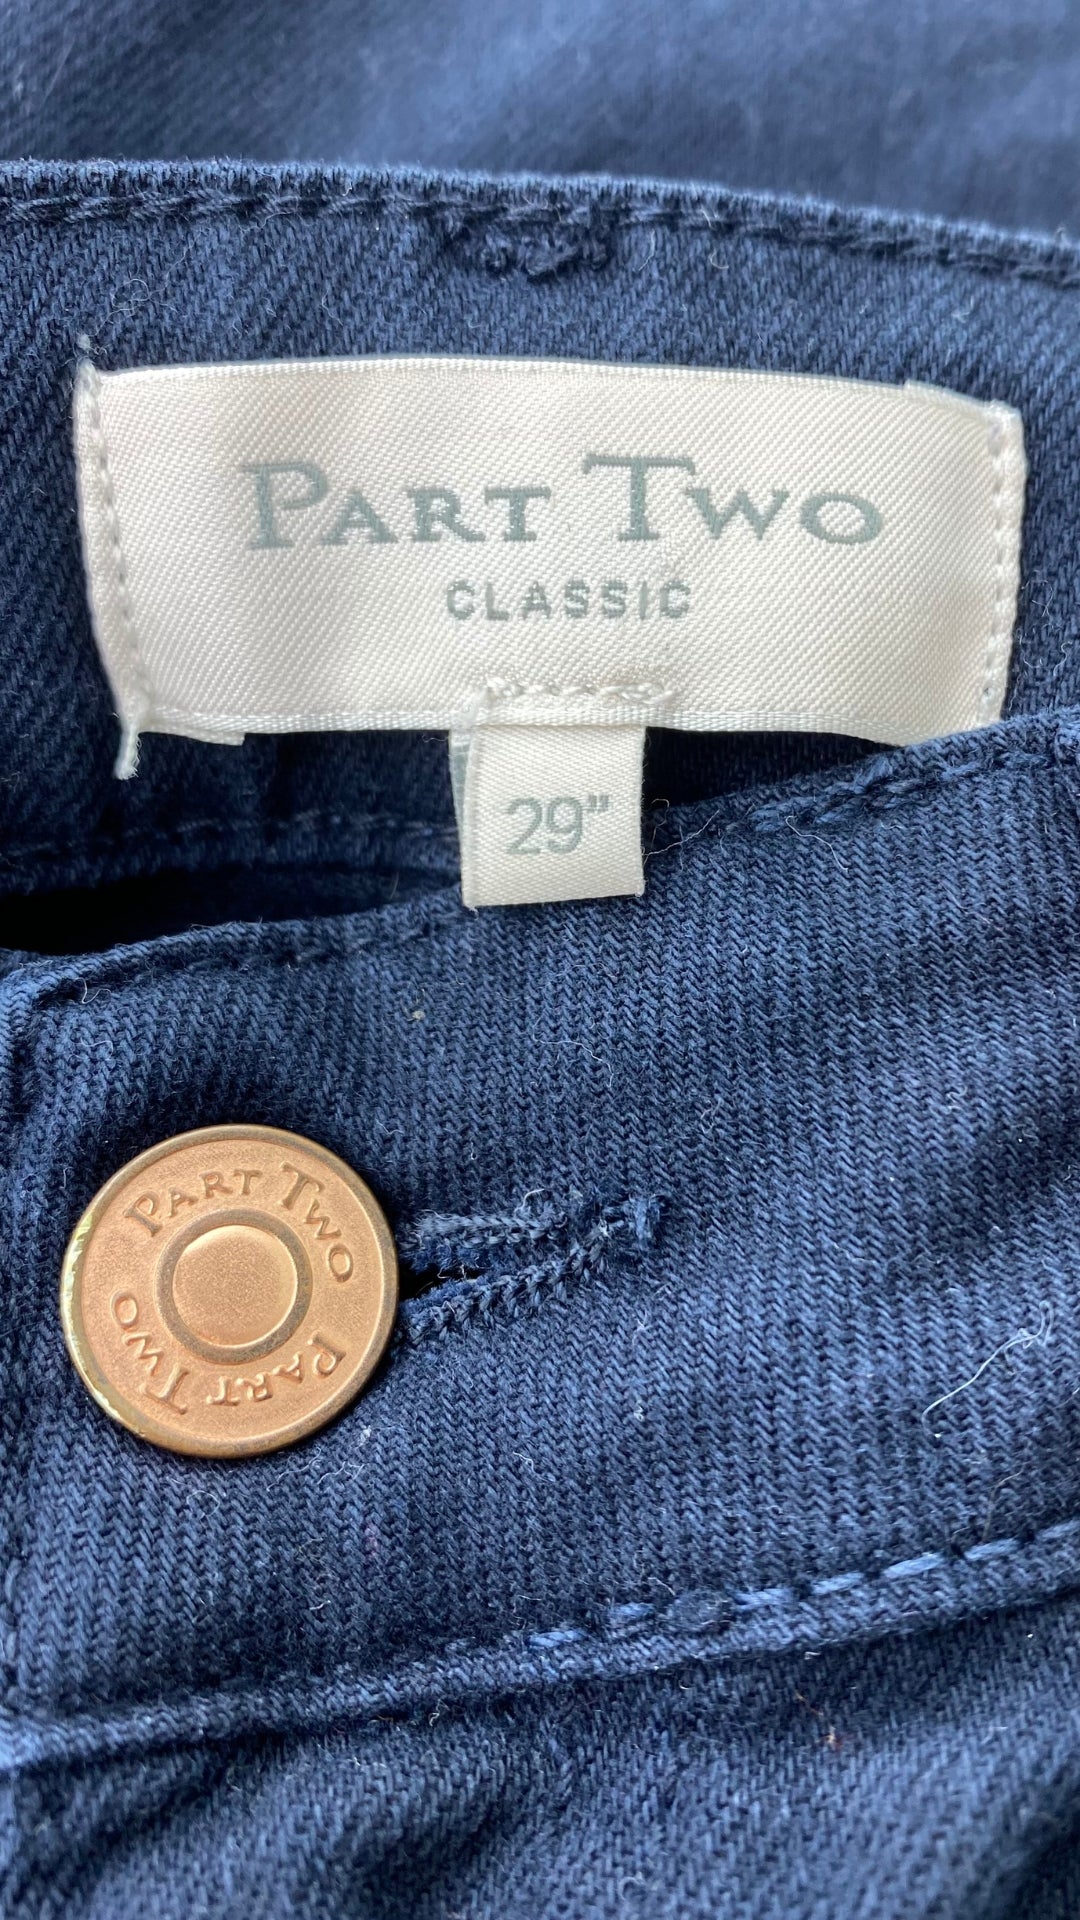 Pantalon denim marine ajusté Part Two, taille 28-29. Vue de l'étiquette de marque et taille.